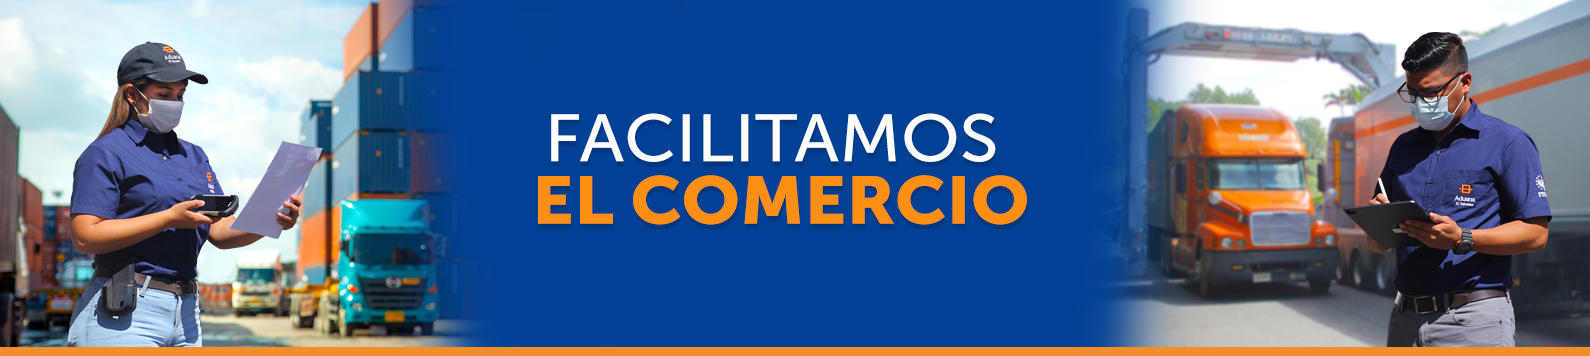 slide 1 /wp-content/uploads/2020/11/FACILITAMOS-EL-COMERCIO-1-1.png